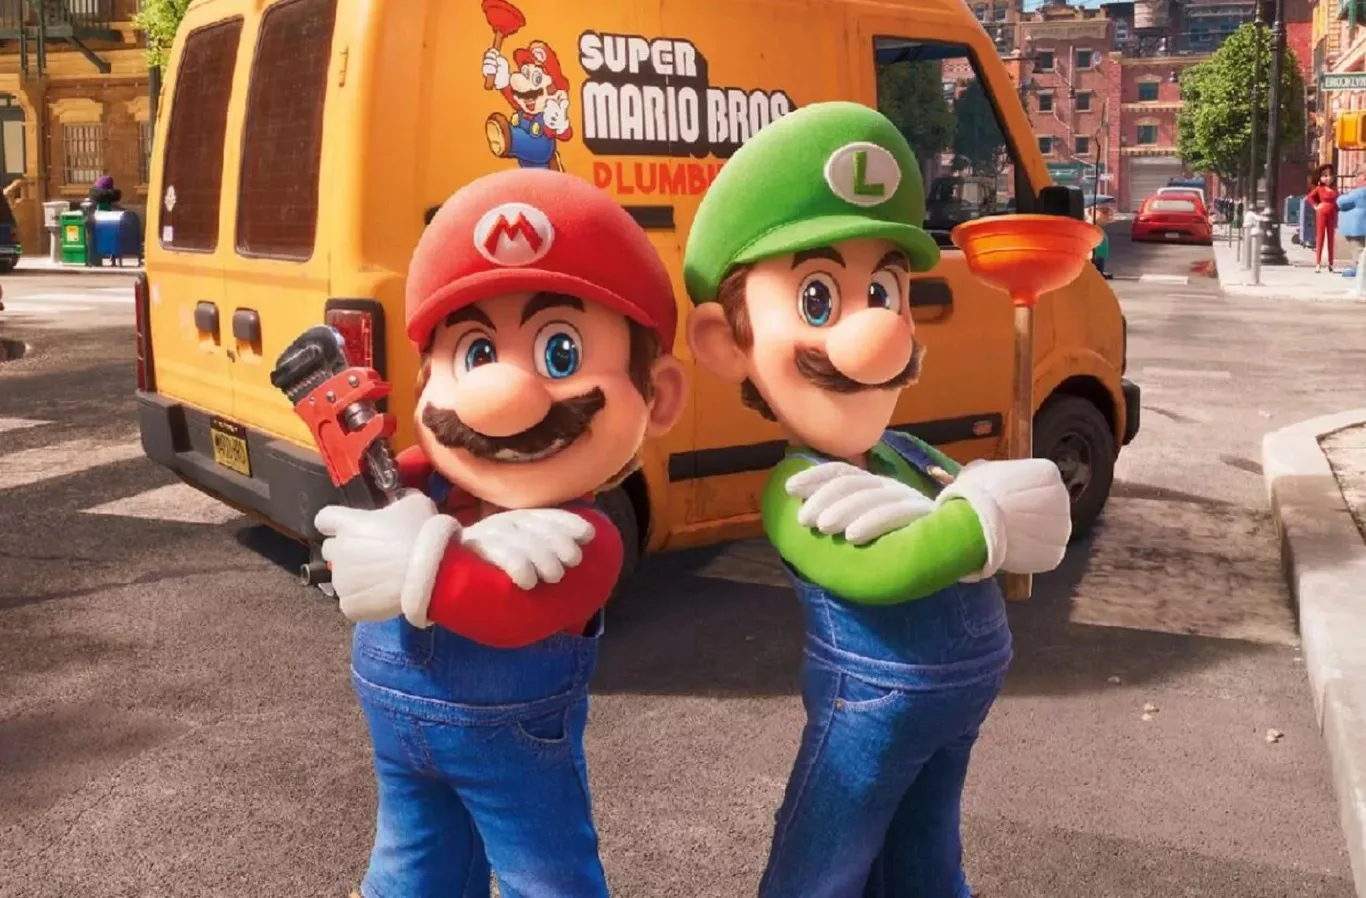 الإعلان عن الجزء الثاني لفيلم The Super Mario Bros رسميًا